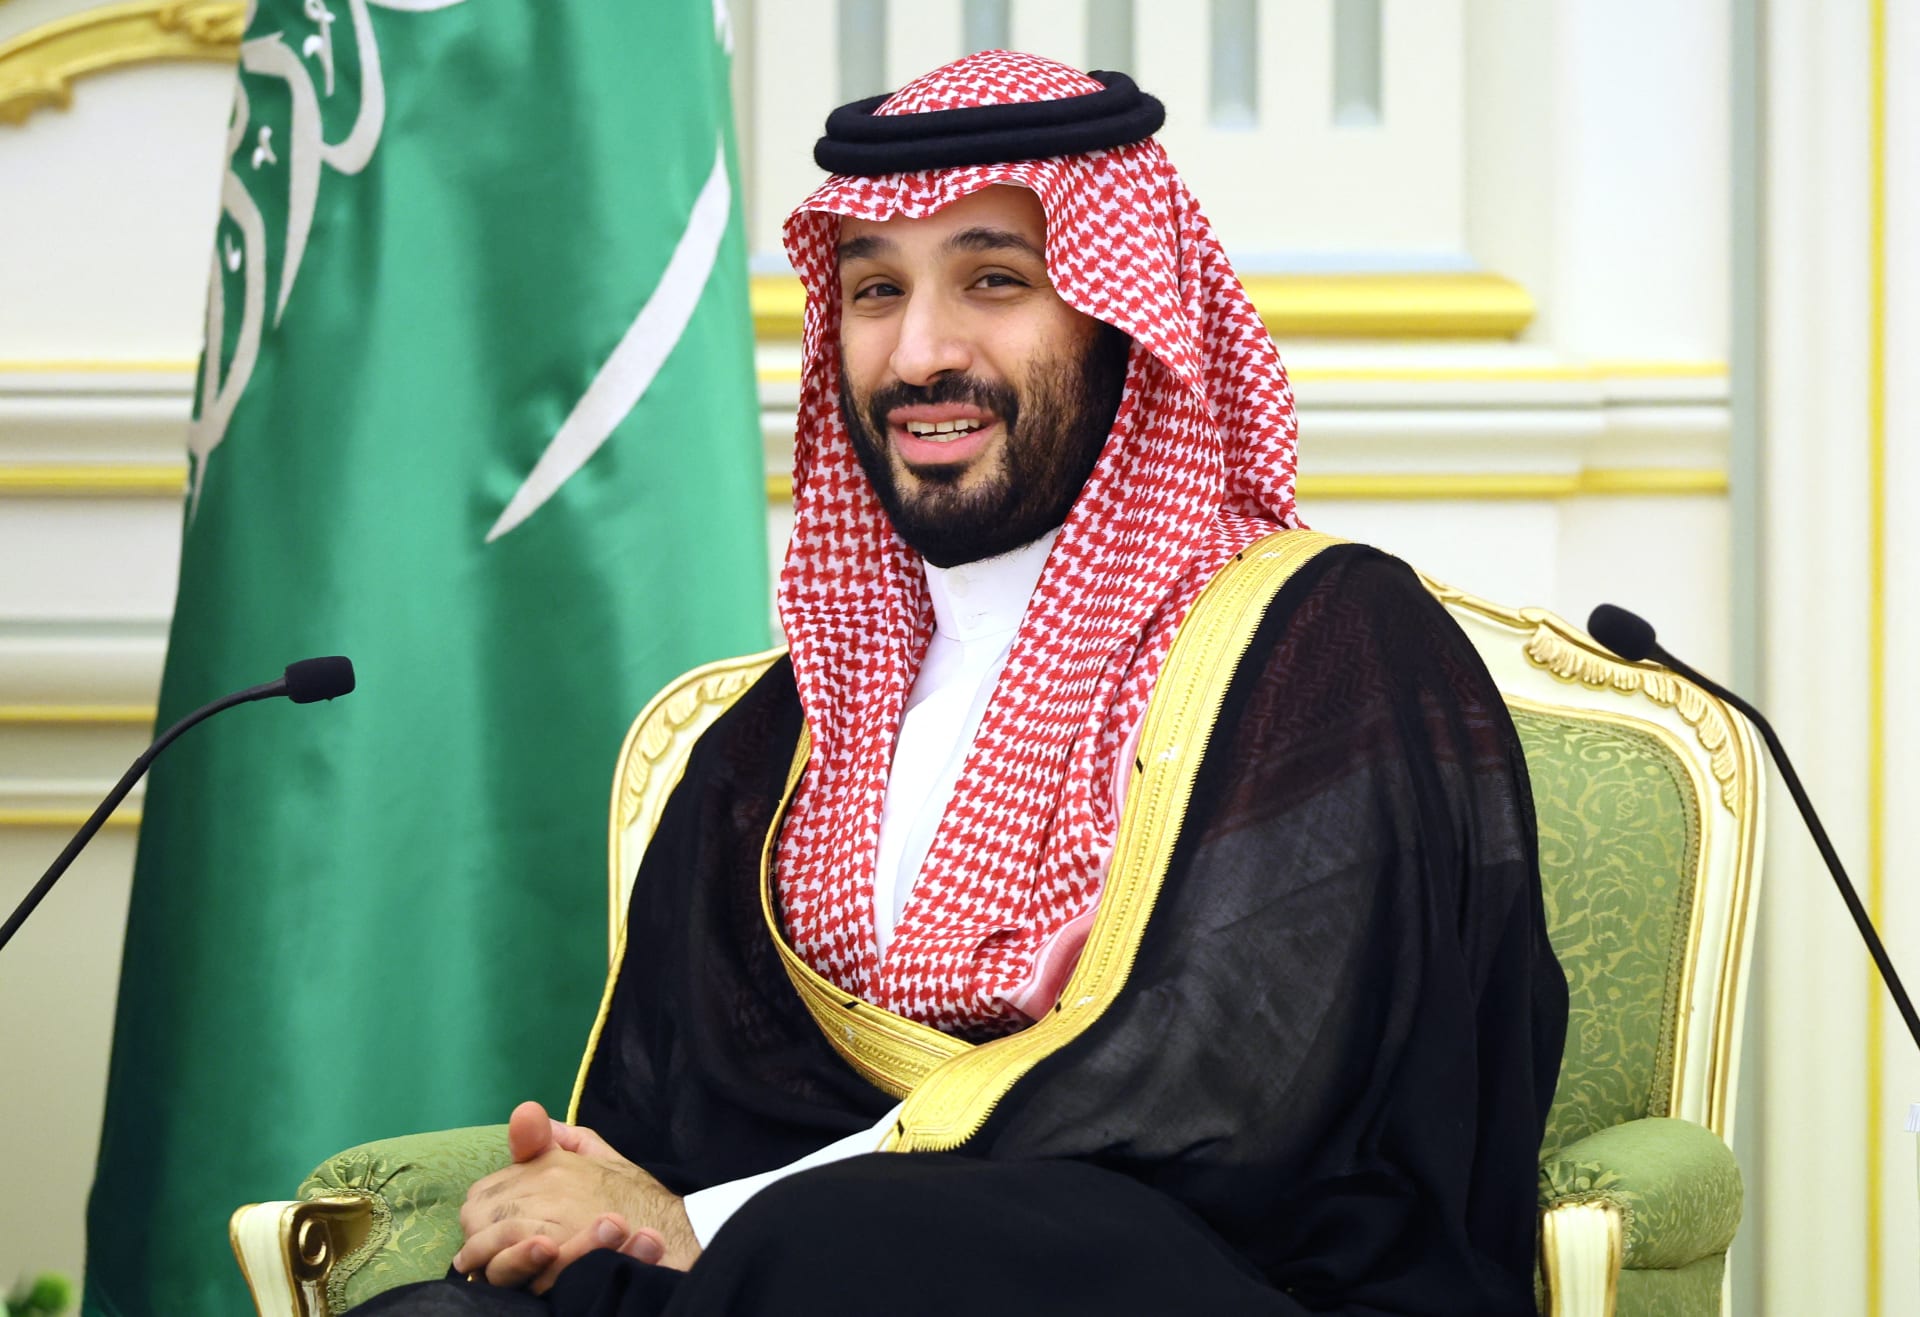 السعودية لا تستبعد الصداقة مع إسرائيل لكنها "قد تأتي بثمن أعلى"